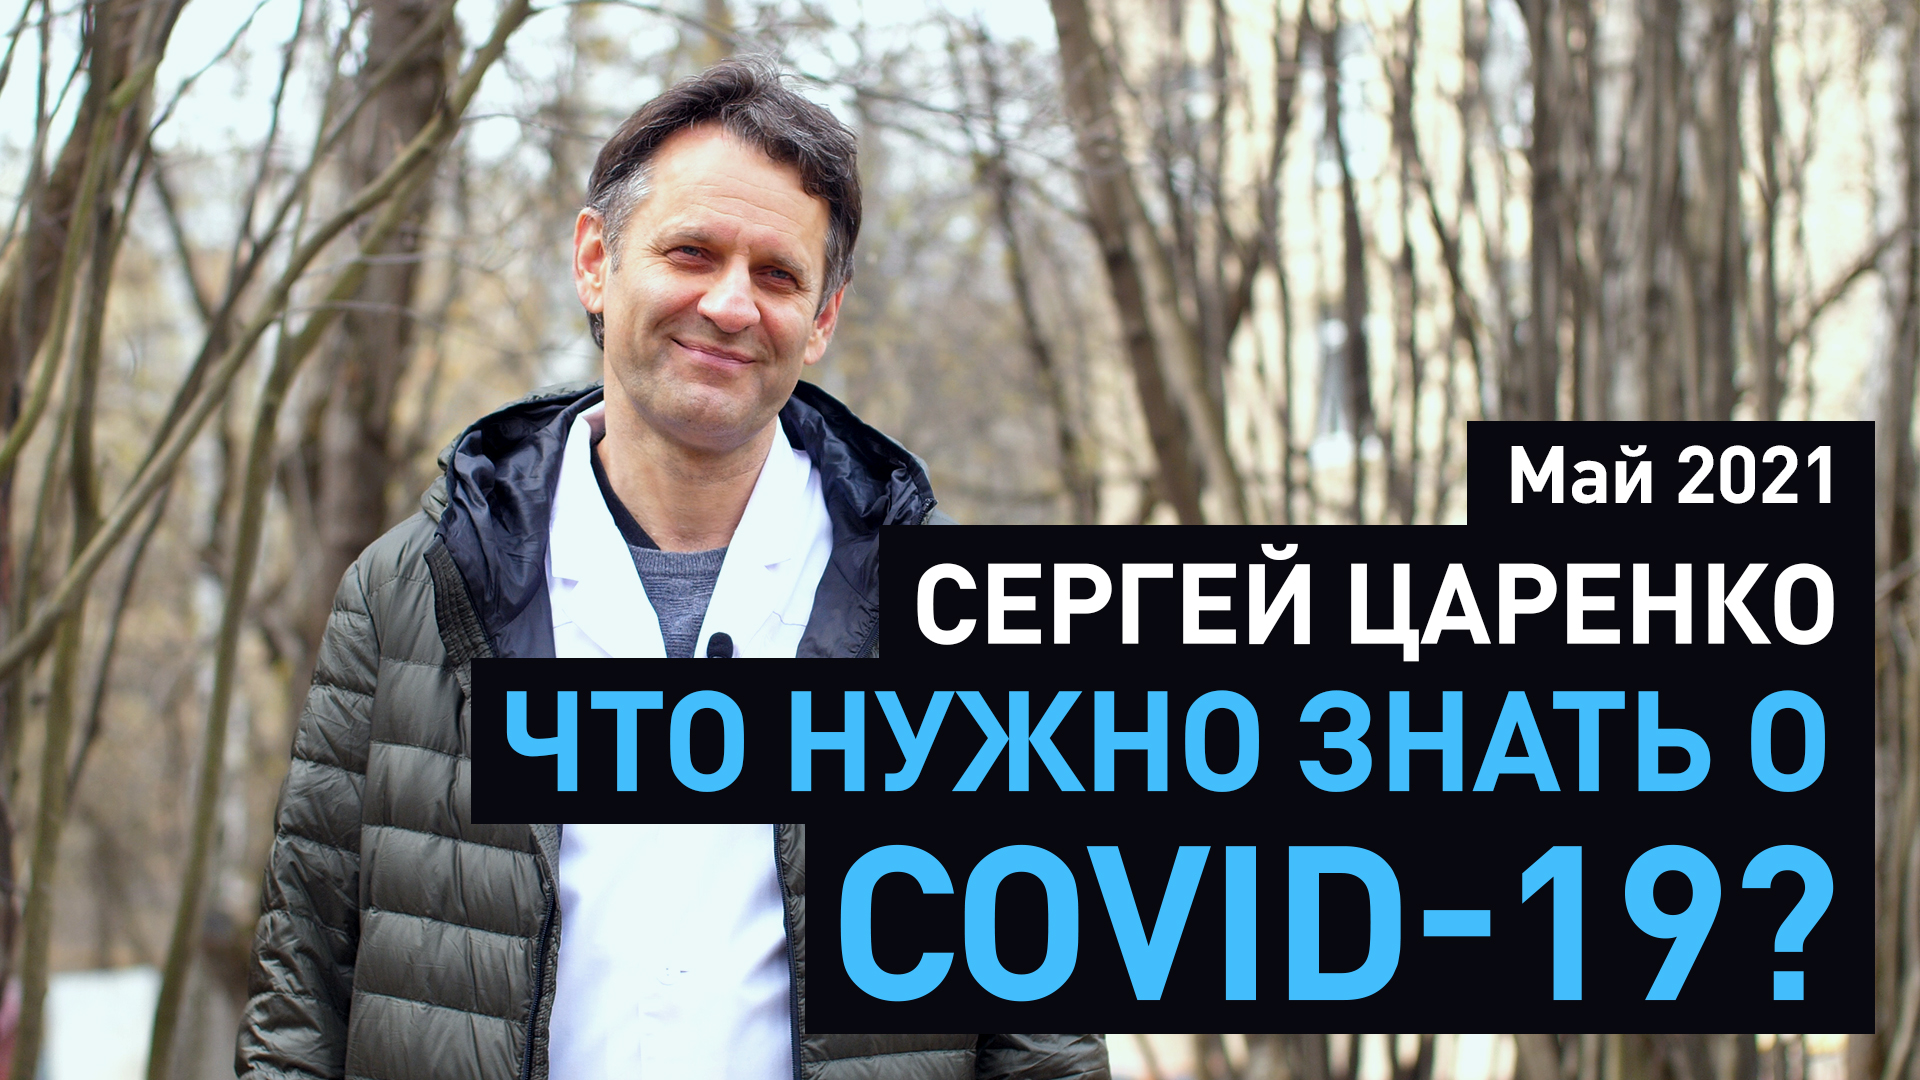 Фонд «Вольное дело» и МГУ запустили второй цикл видеолекций о COVID-19